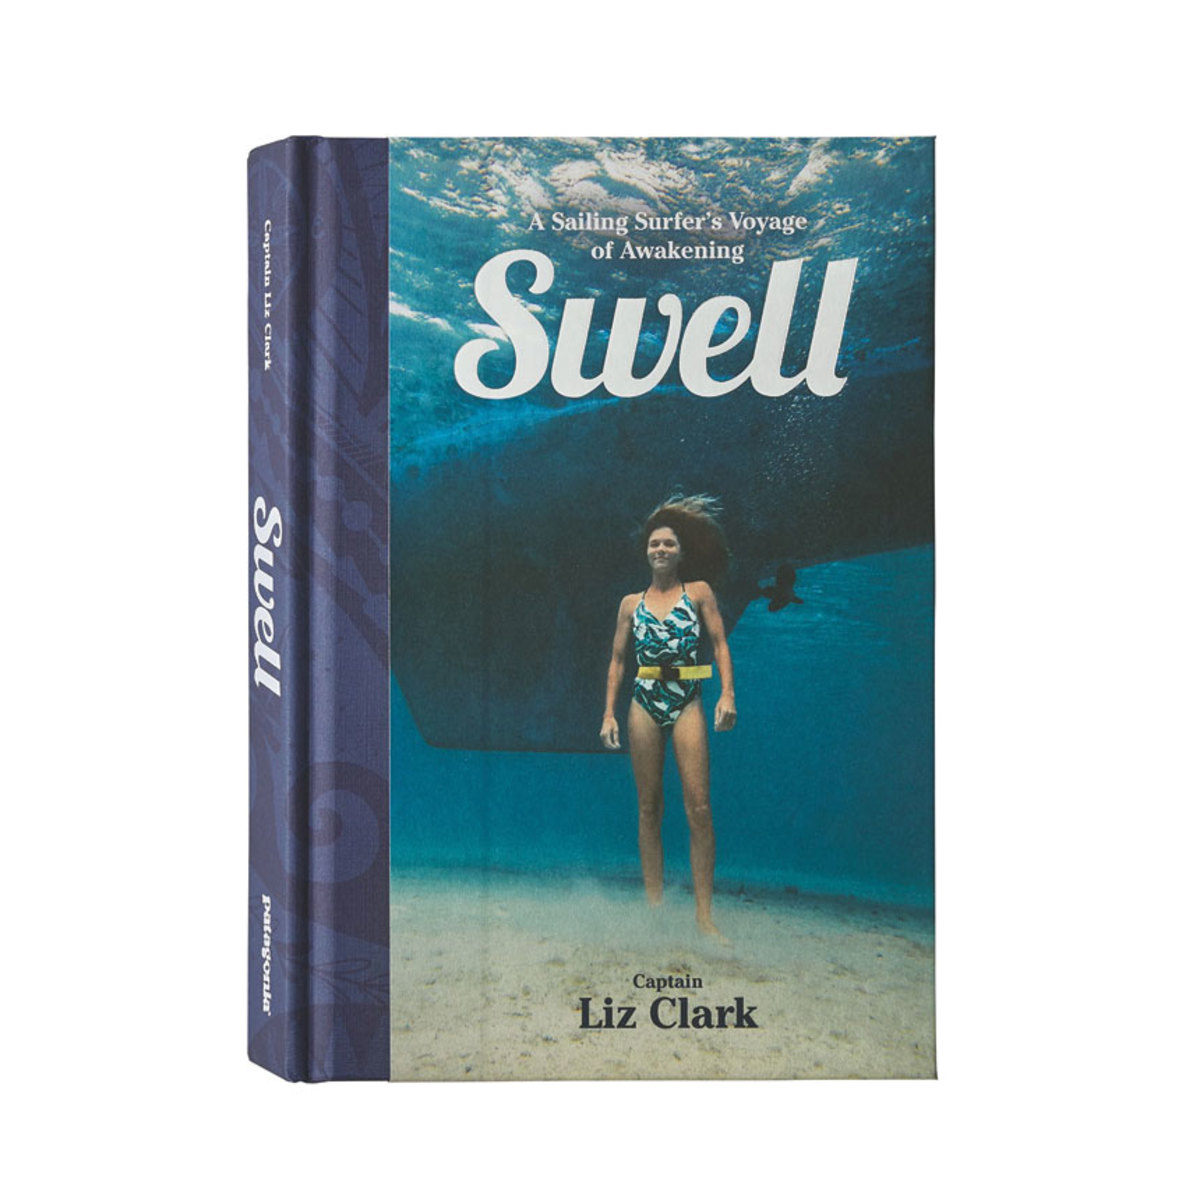  Swell by Liz Clark  